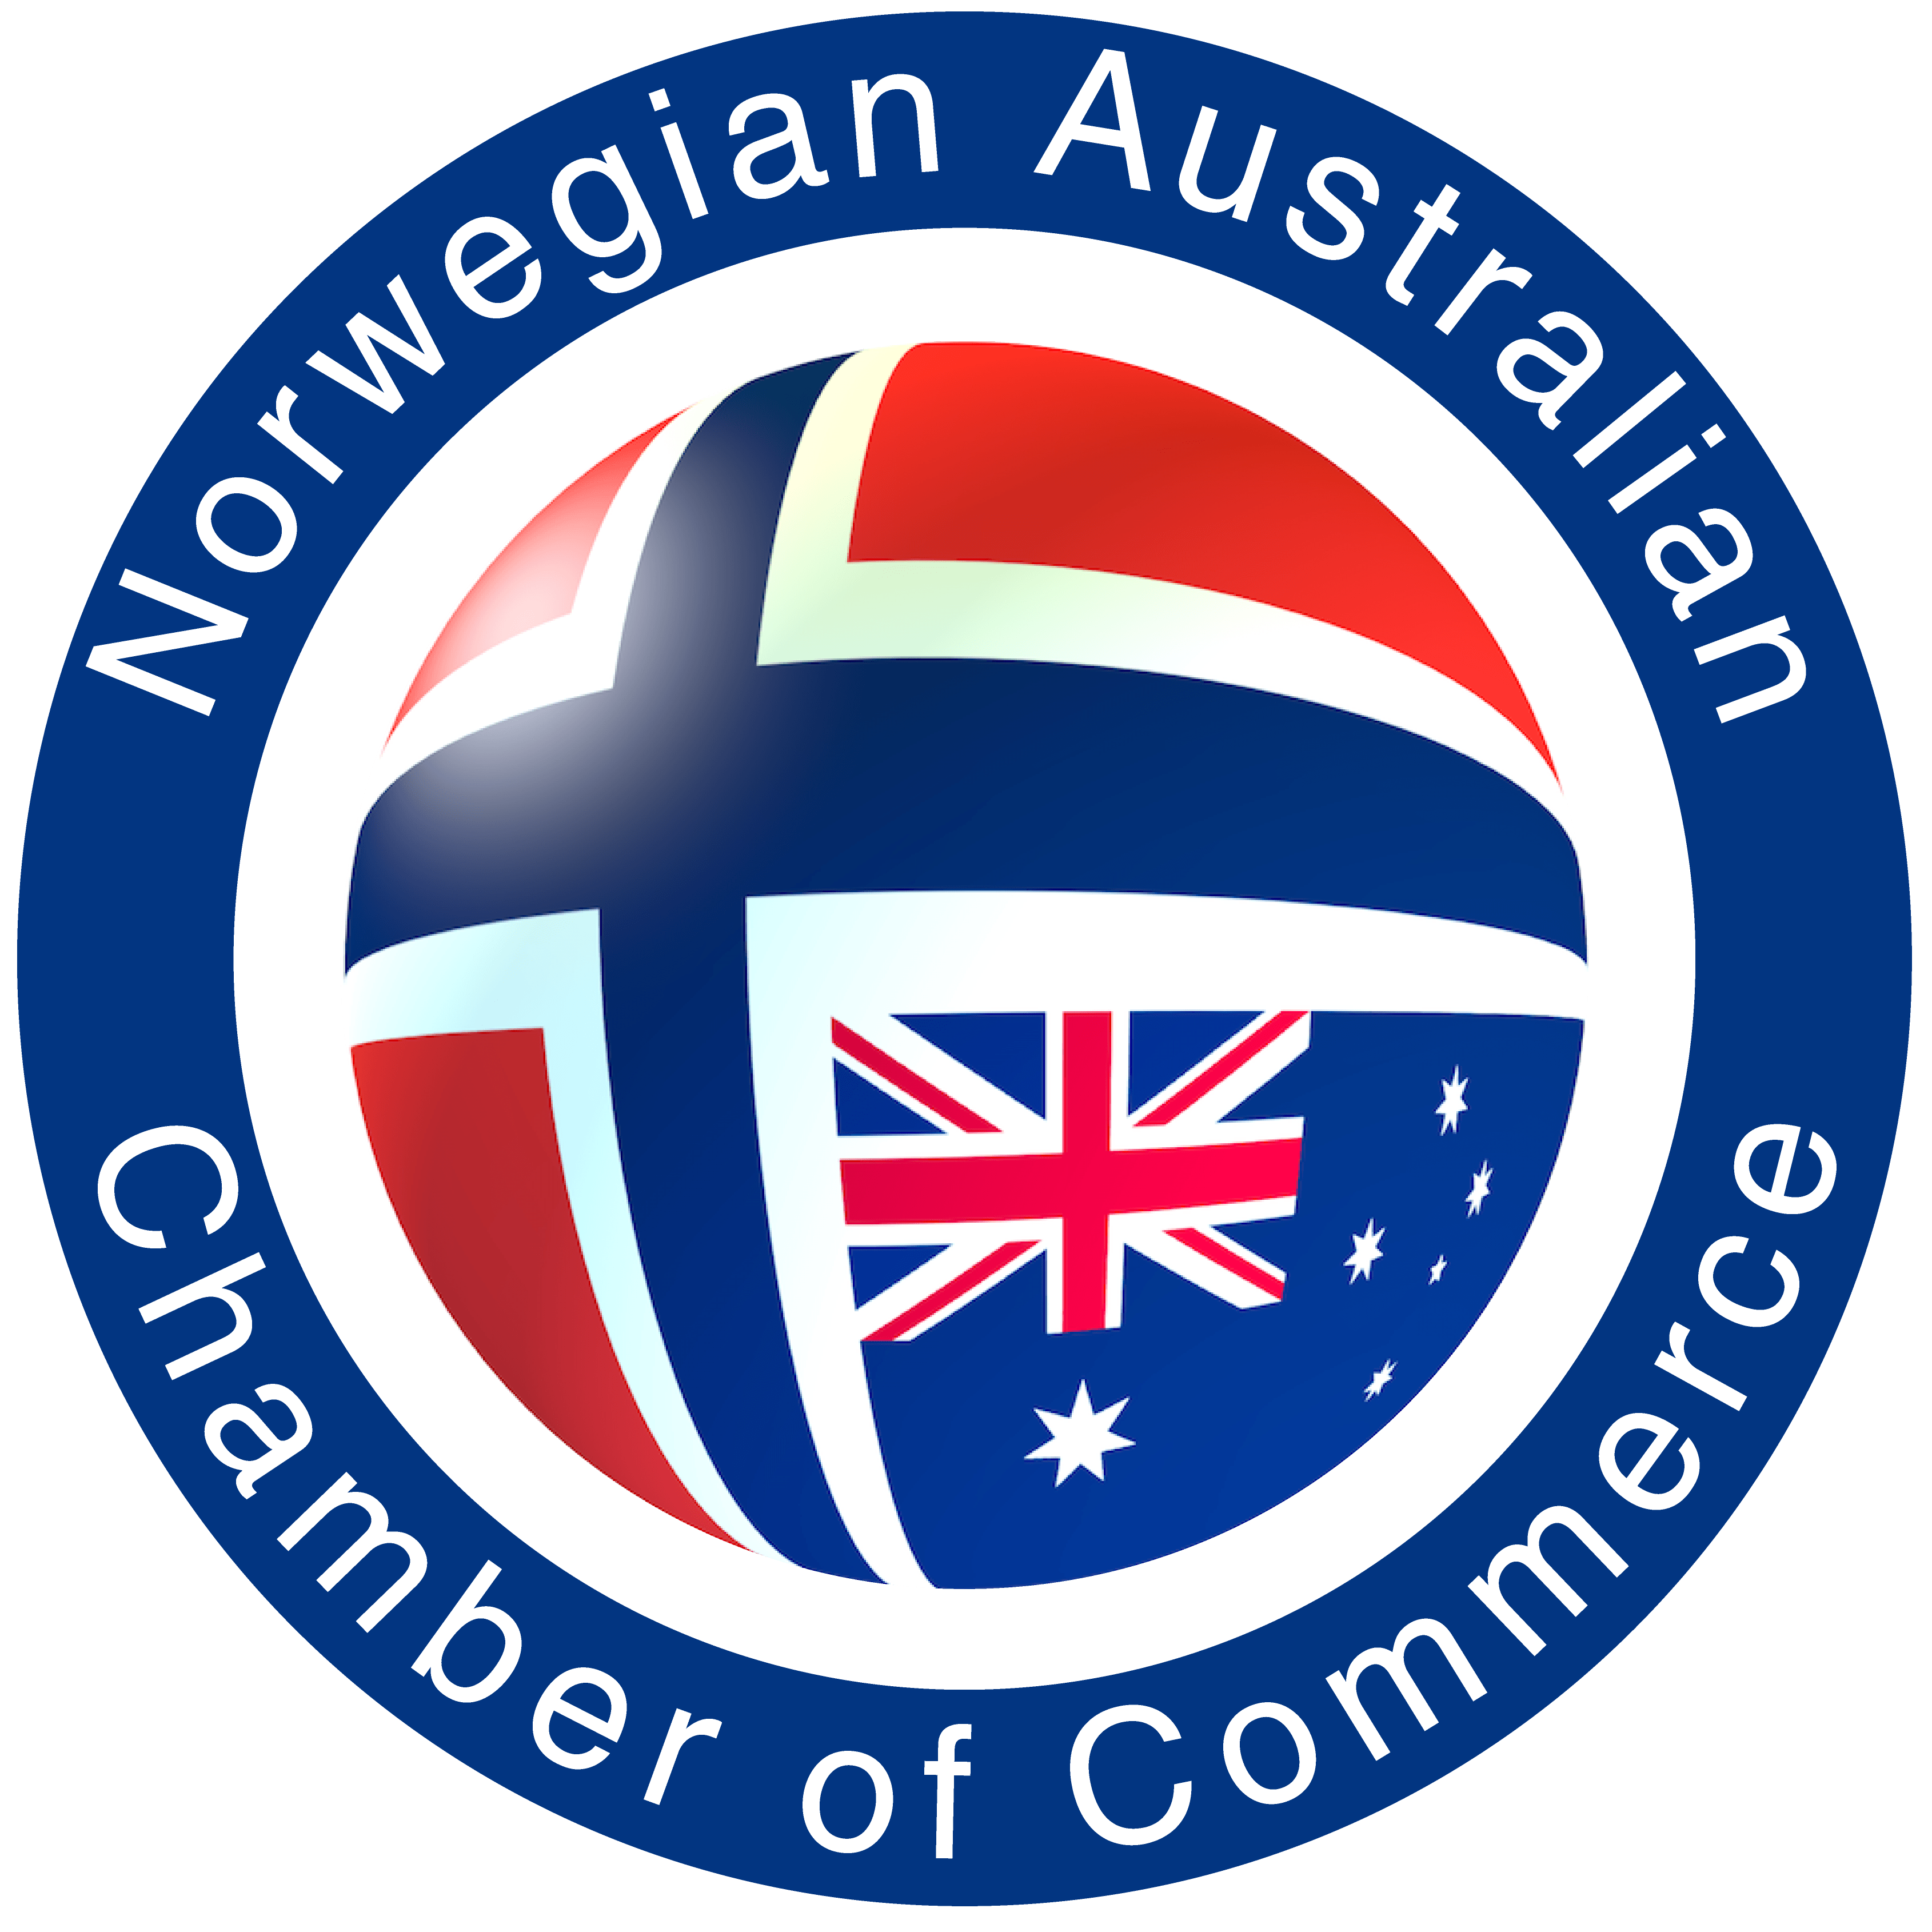 Australian Business Logo - Norwegian Australian Chamber of Commerce